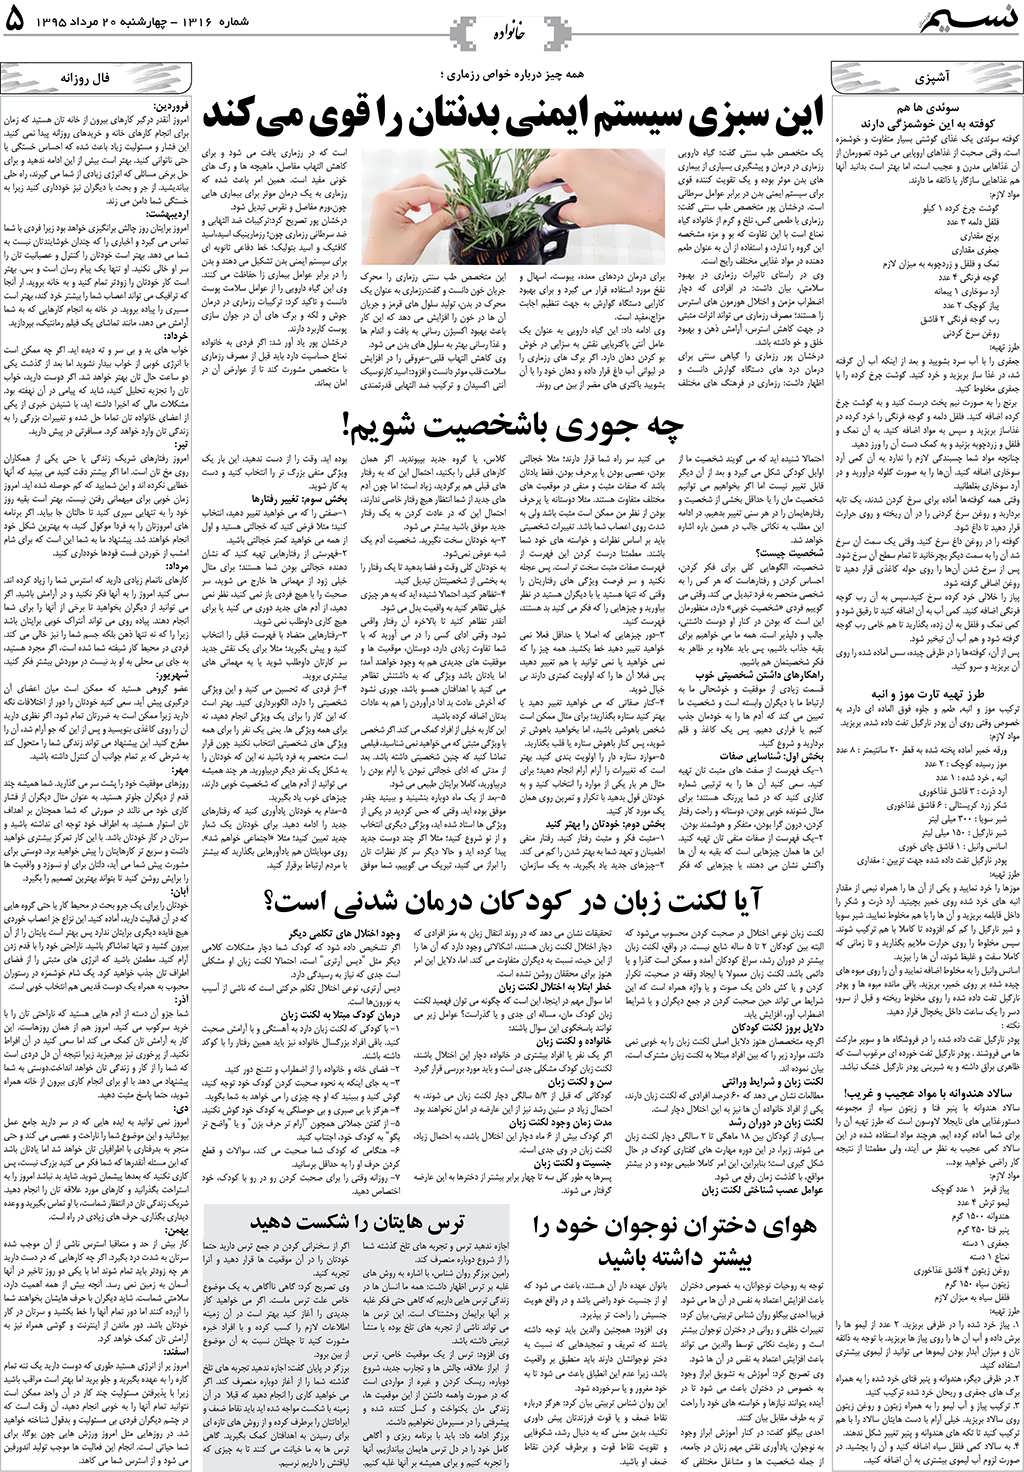 صفحه خانواده روزنامه نسیم شماره 1316